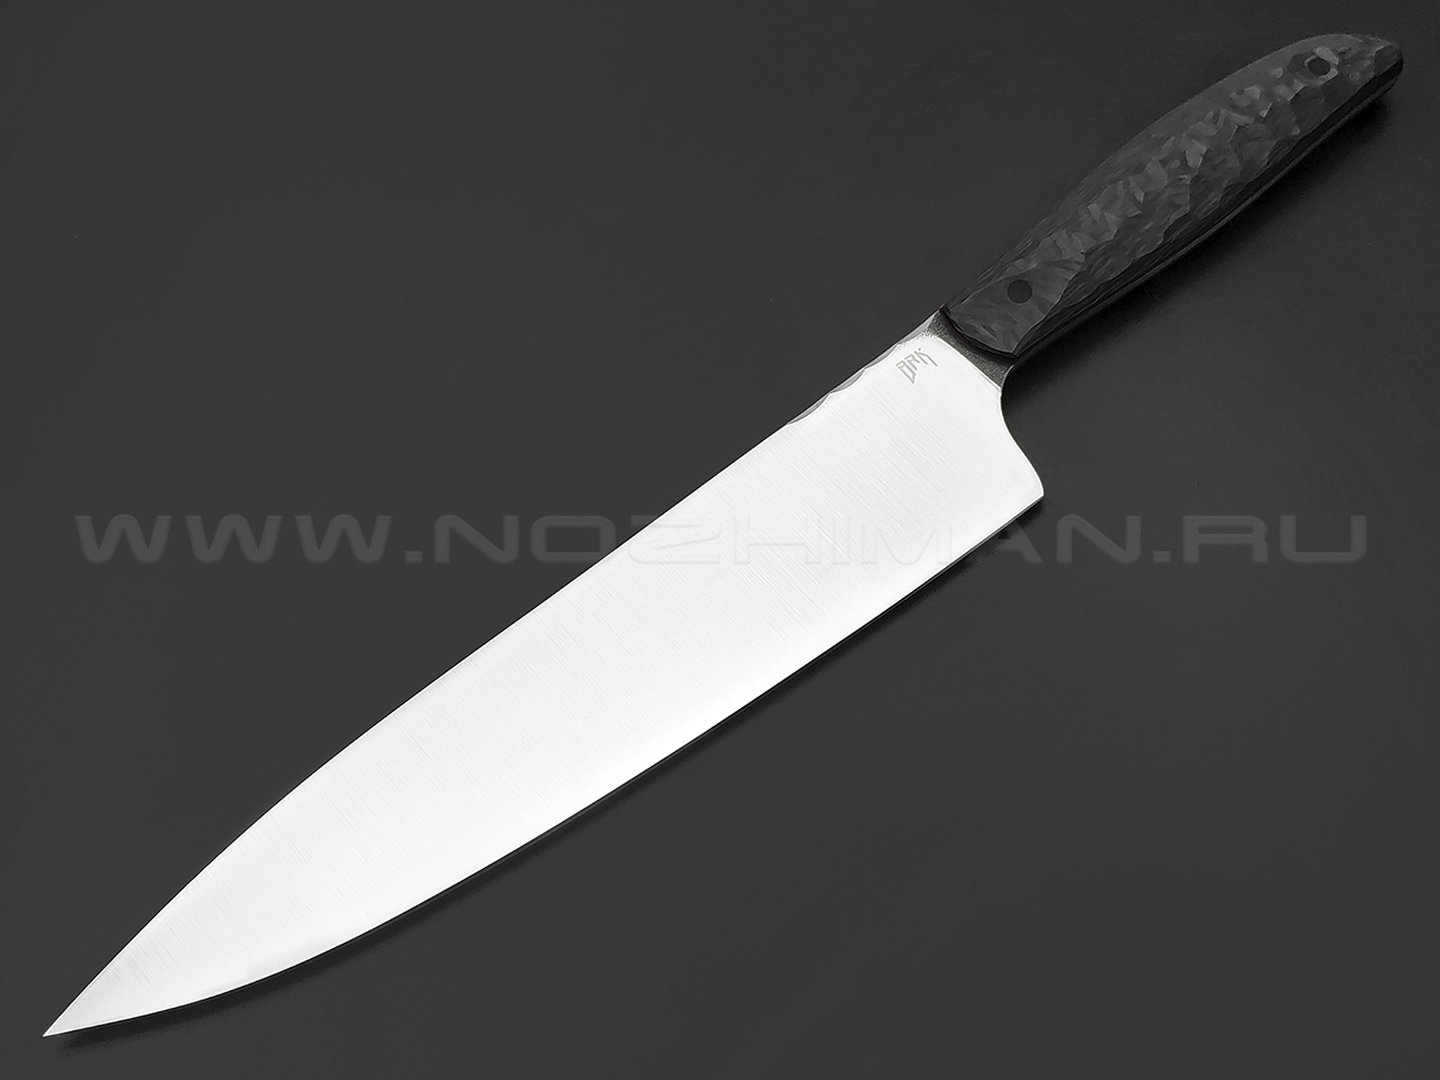 BRK кухонный нож Chef BX0210 сталь LO-PM 63, рукоять Carbon fiber